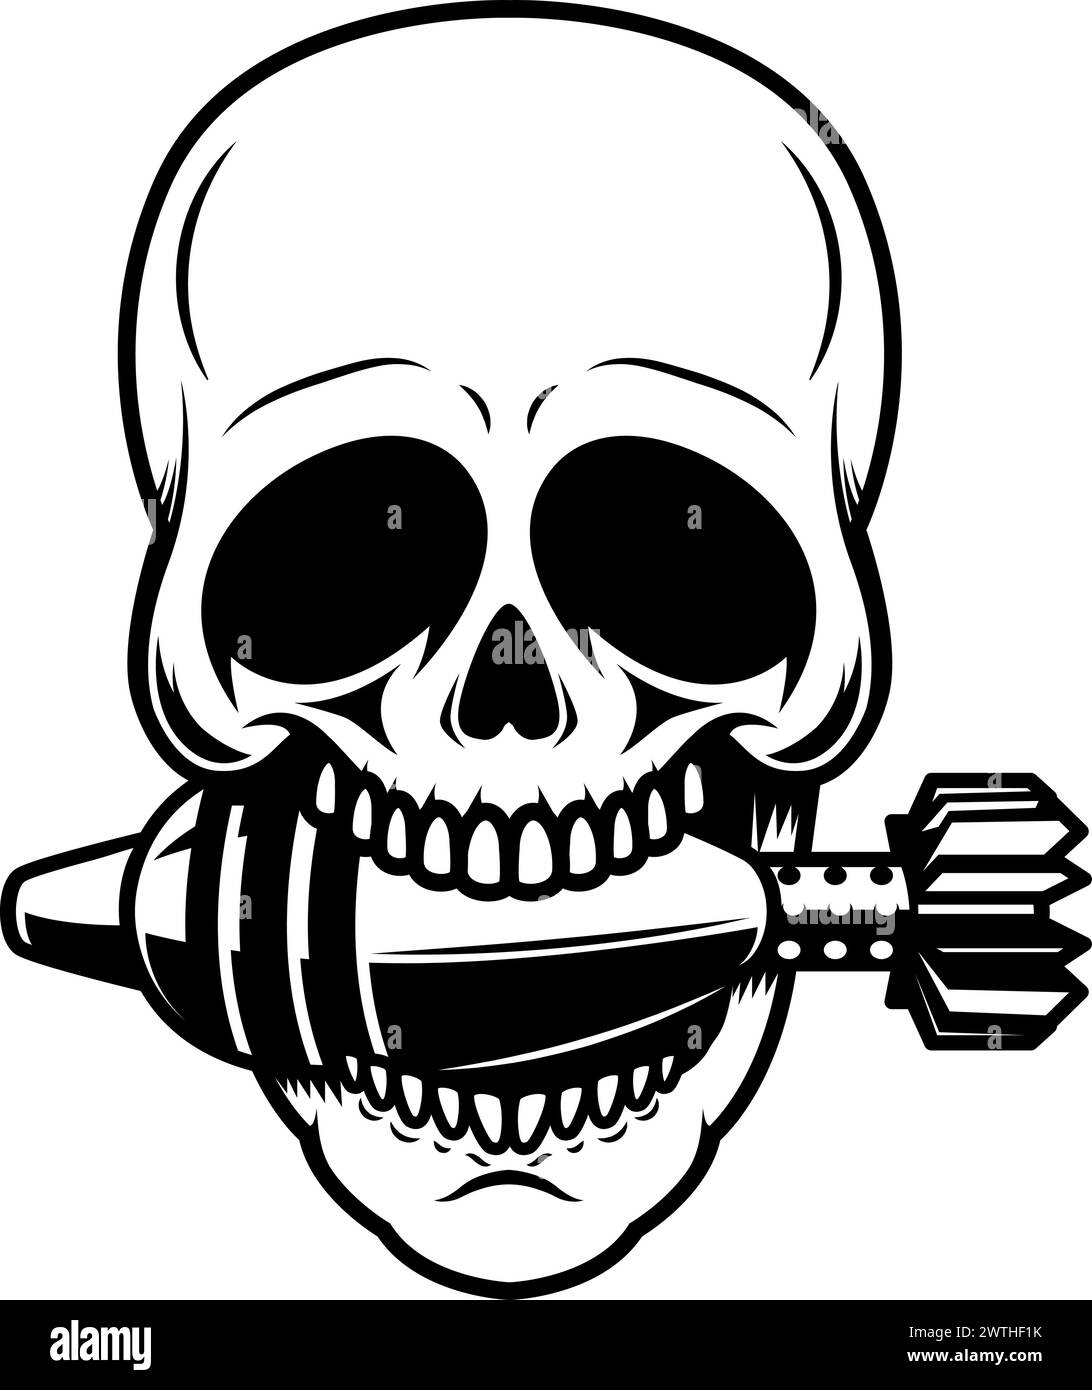 Illustration eines Schädels mit Mörtelschale in den Zähnen. Designelement für Poster, Emblem, Schild, Abzeichen. Vektorabbildung Stock Vektor